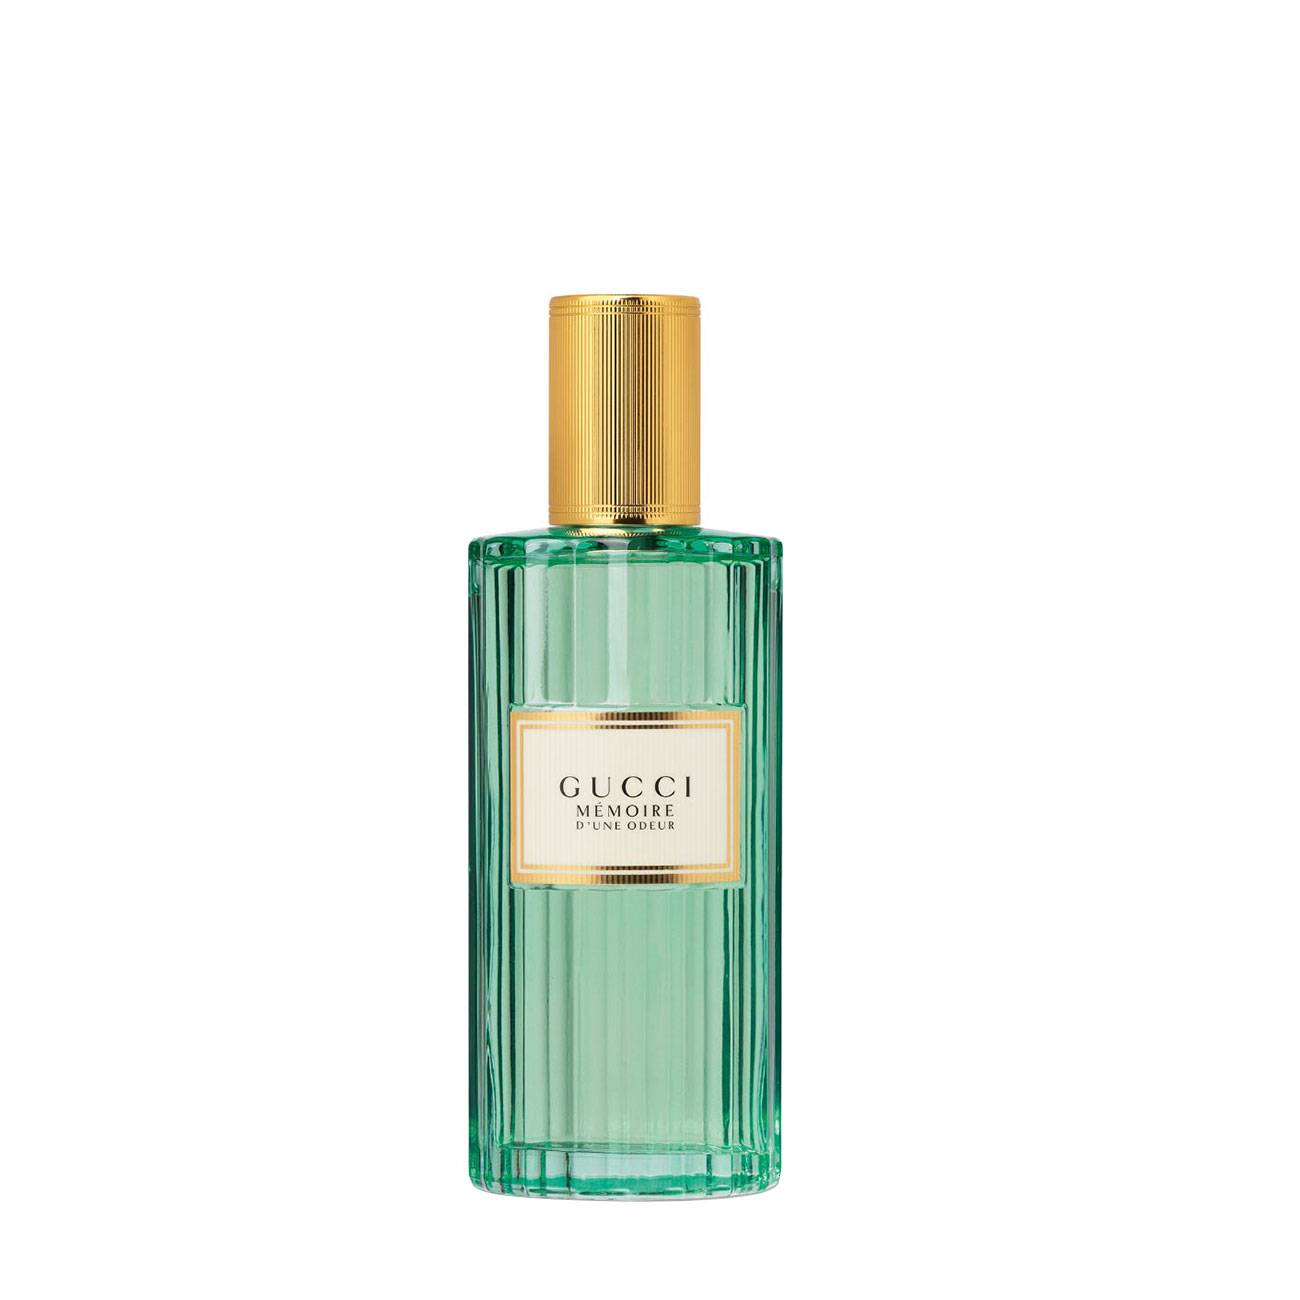 Apa de Parfum Gucci MEMOIRE D'UNE ODEUR 60ml cu comanda online